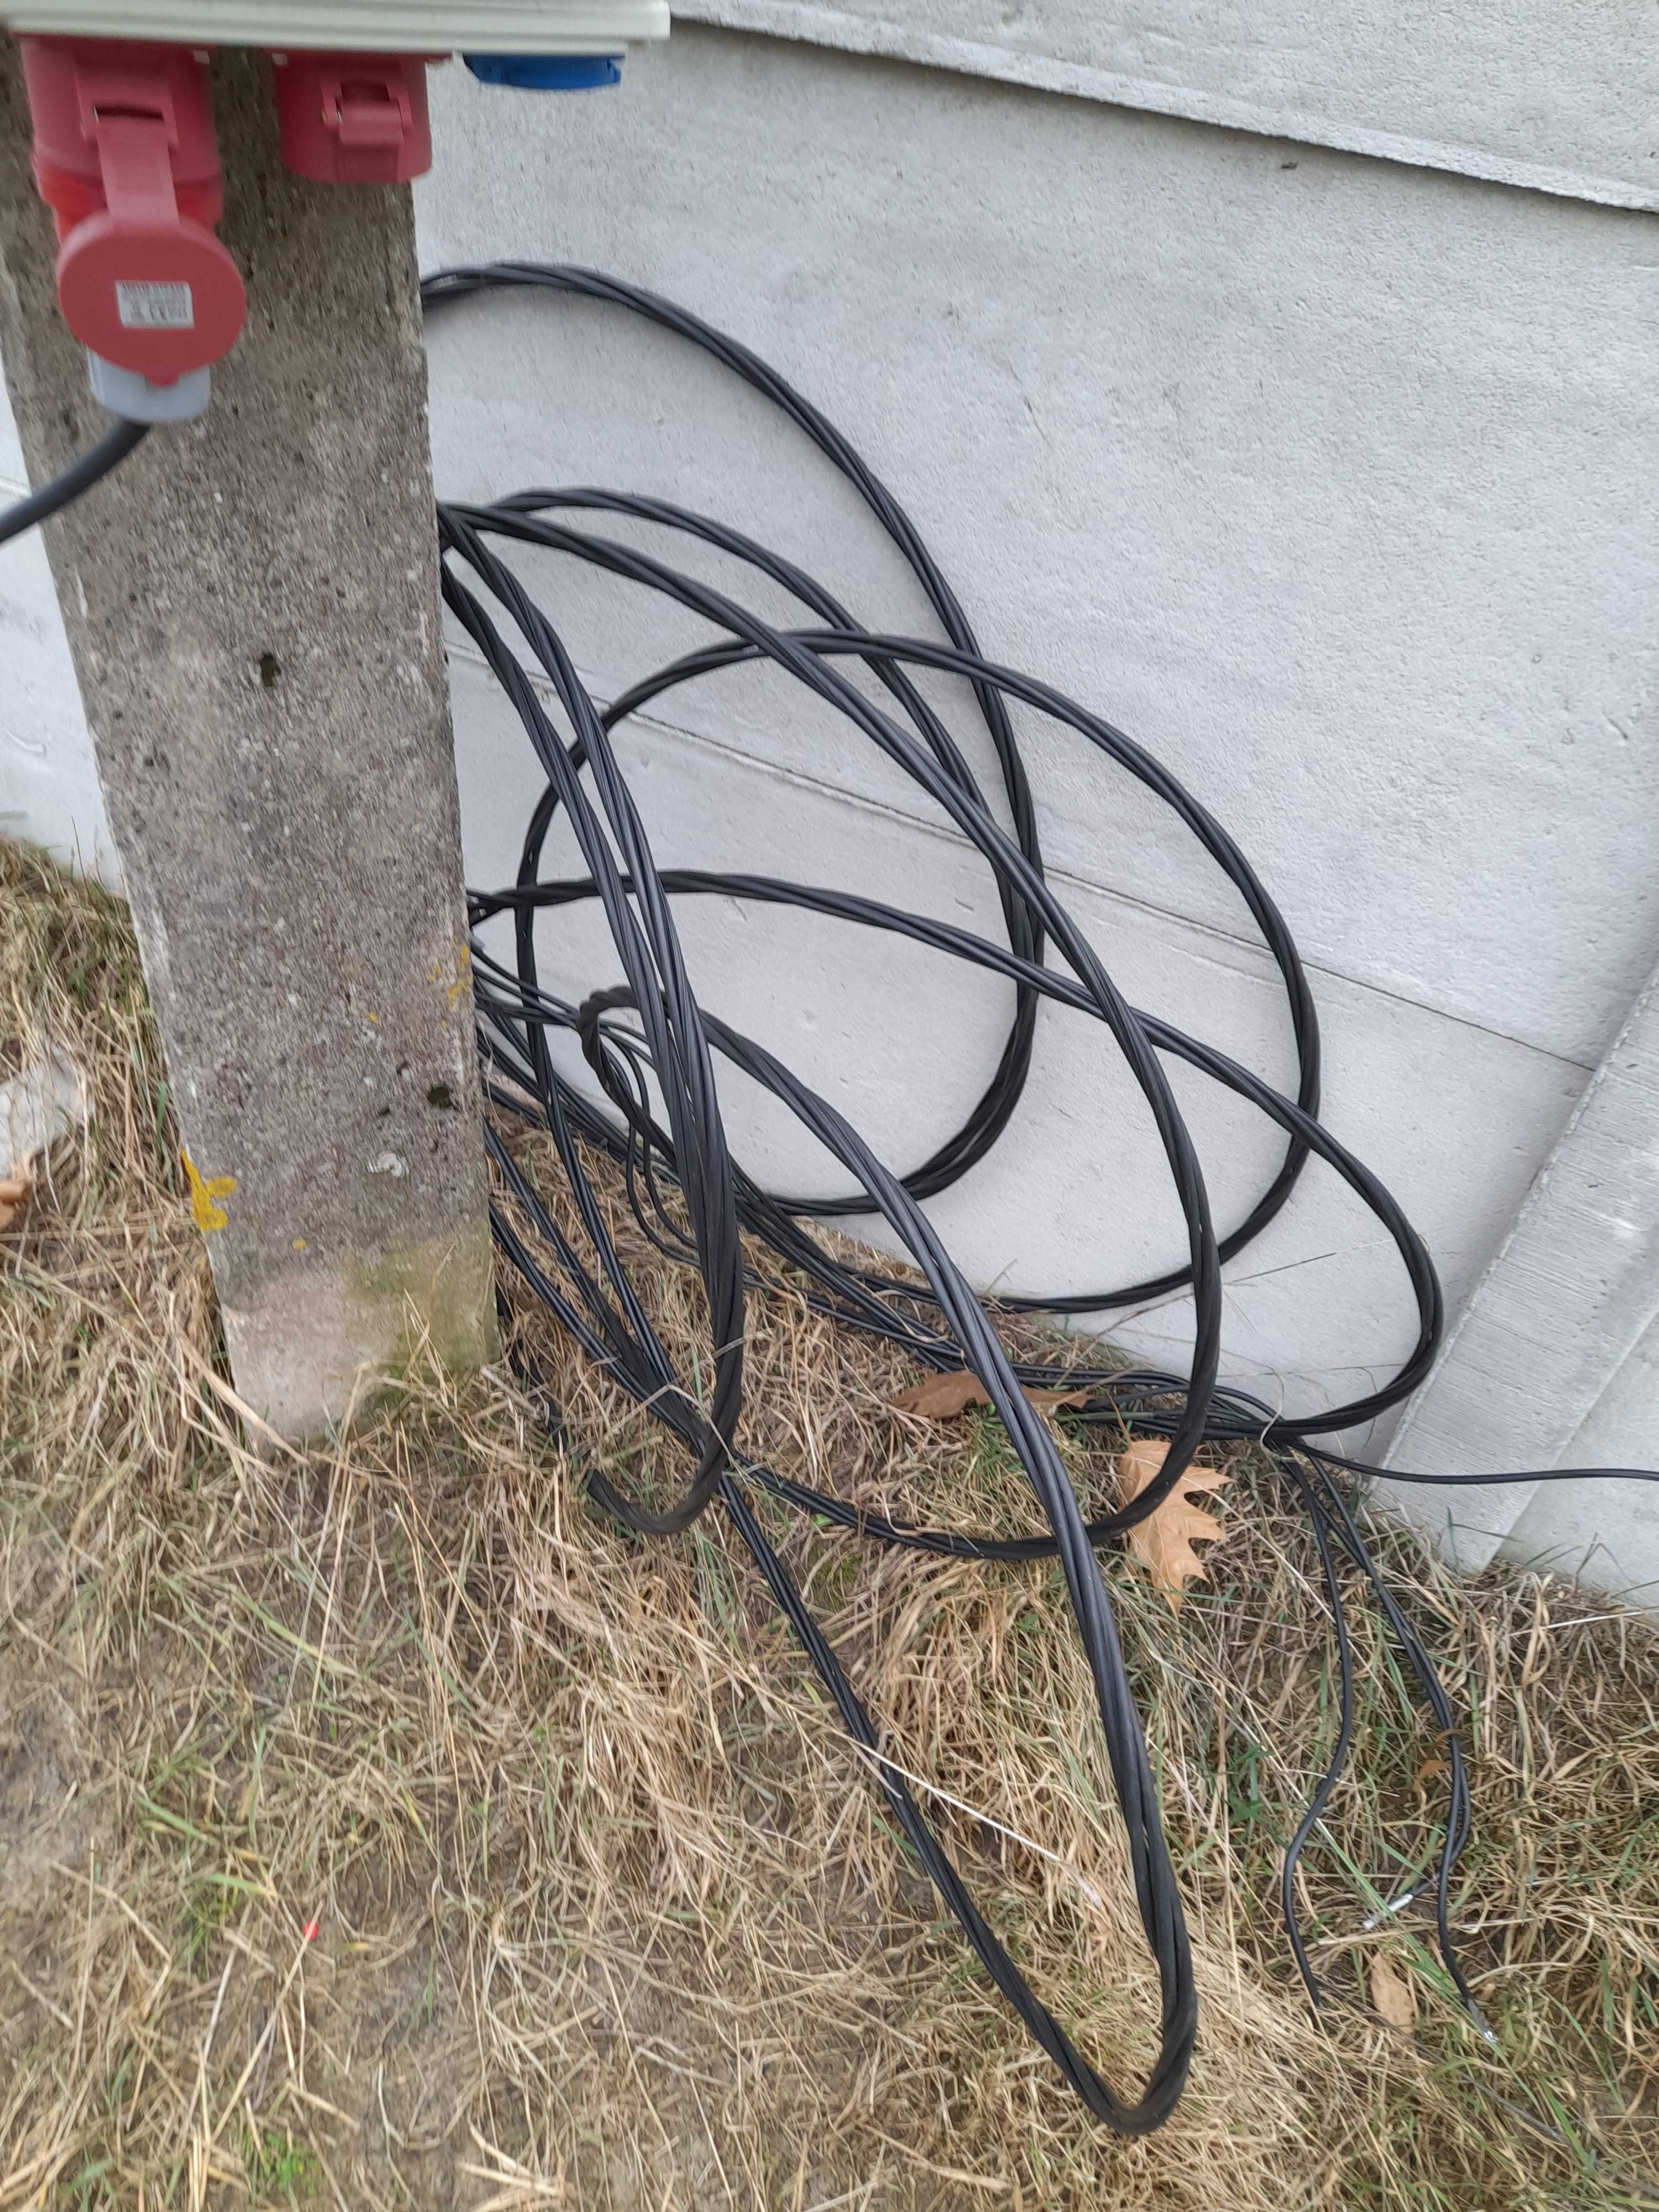 Erbetka prowizorka budowlana skrzynka kabel przyłącze prądu